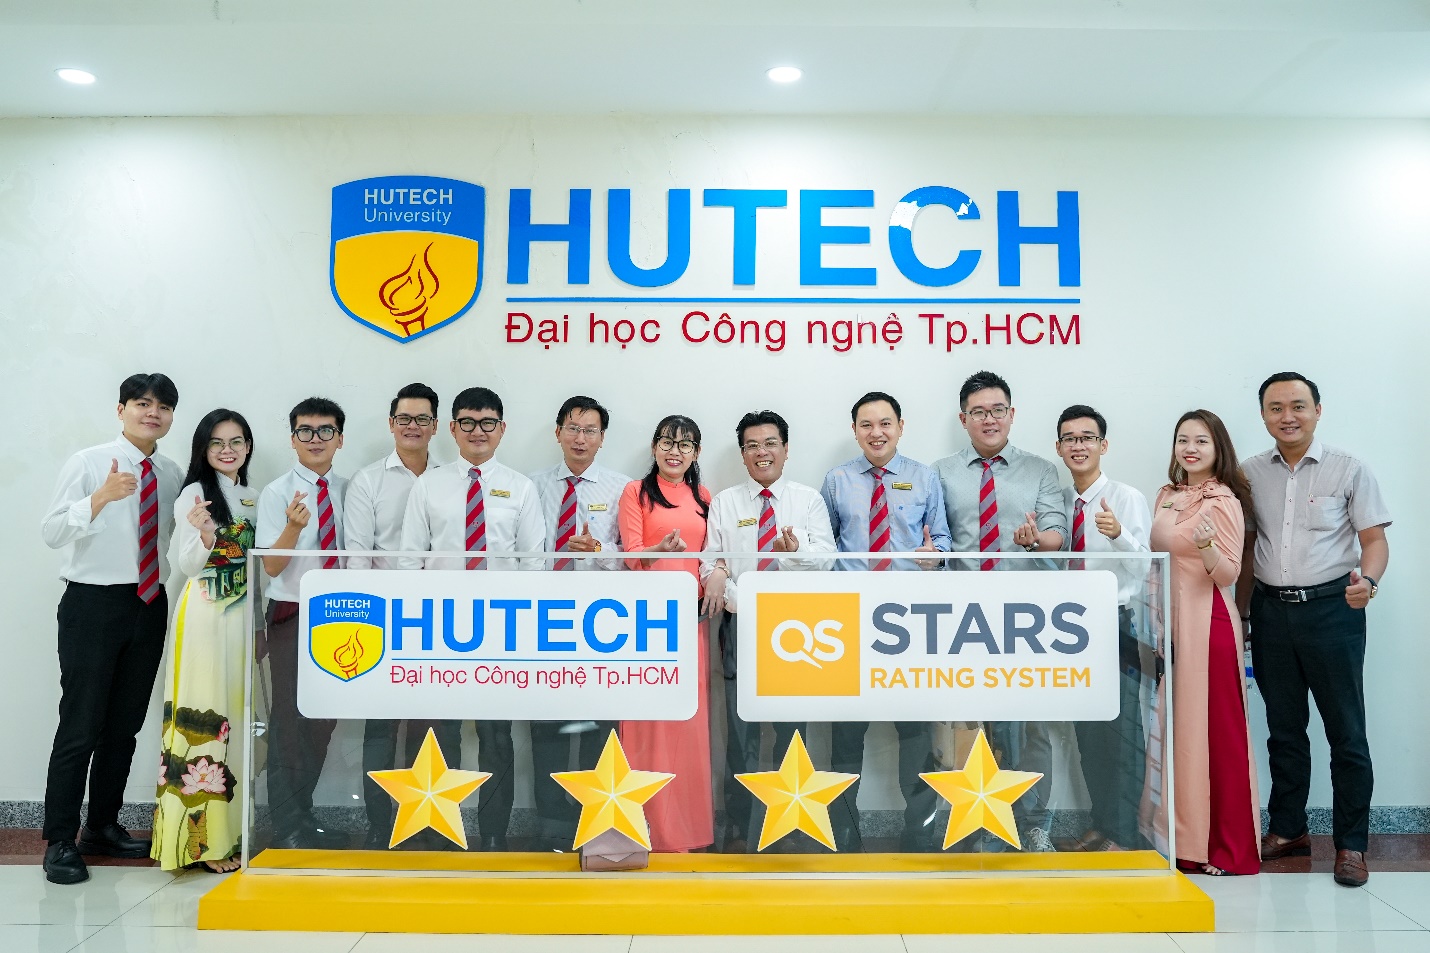 HUTECH được công nhận đạt chuẩn quốc tế QS Stars 4 sao với ưu thế vượt trội về chất lượng giảng dạy và việc làm của sinh viên - Ảnh 5.